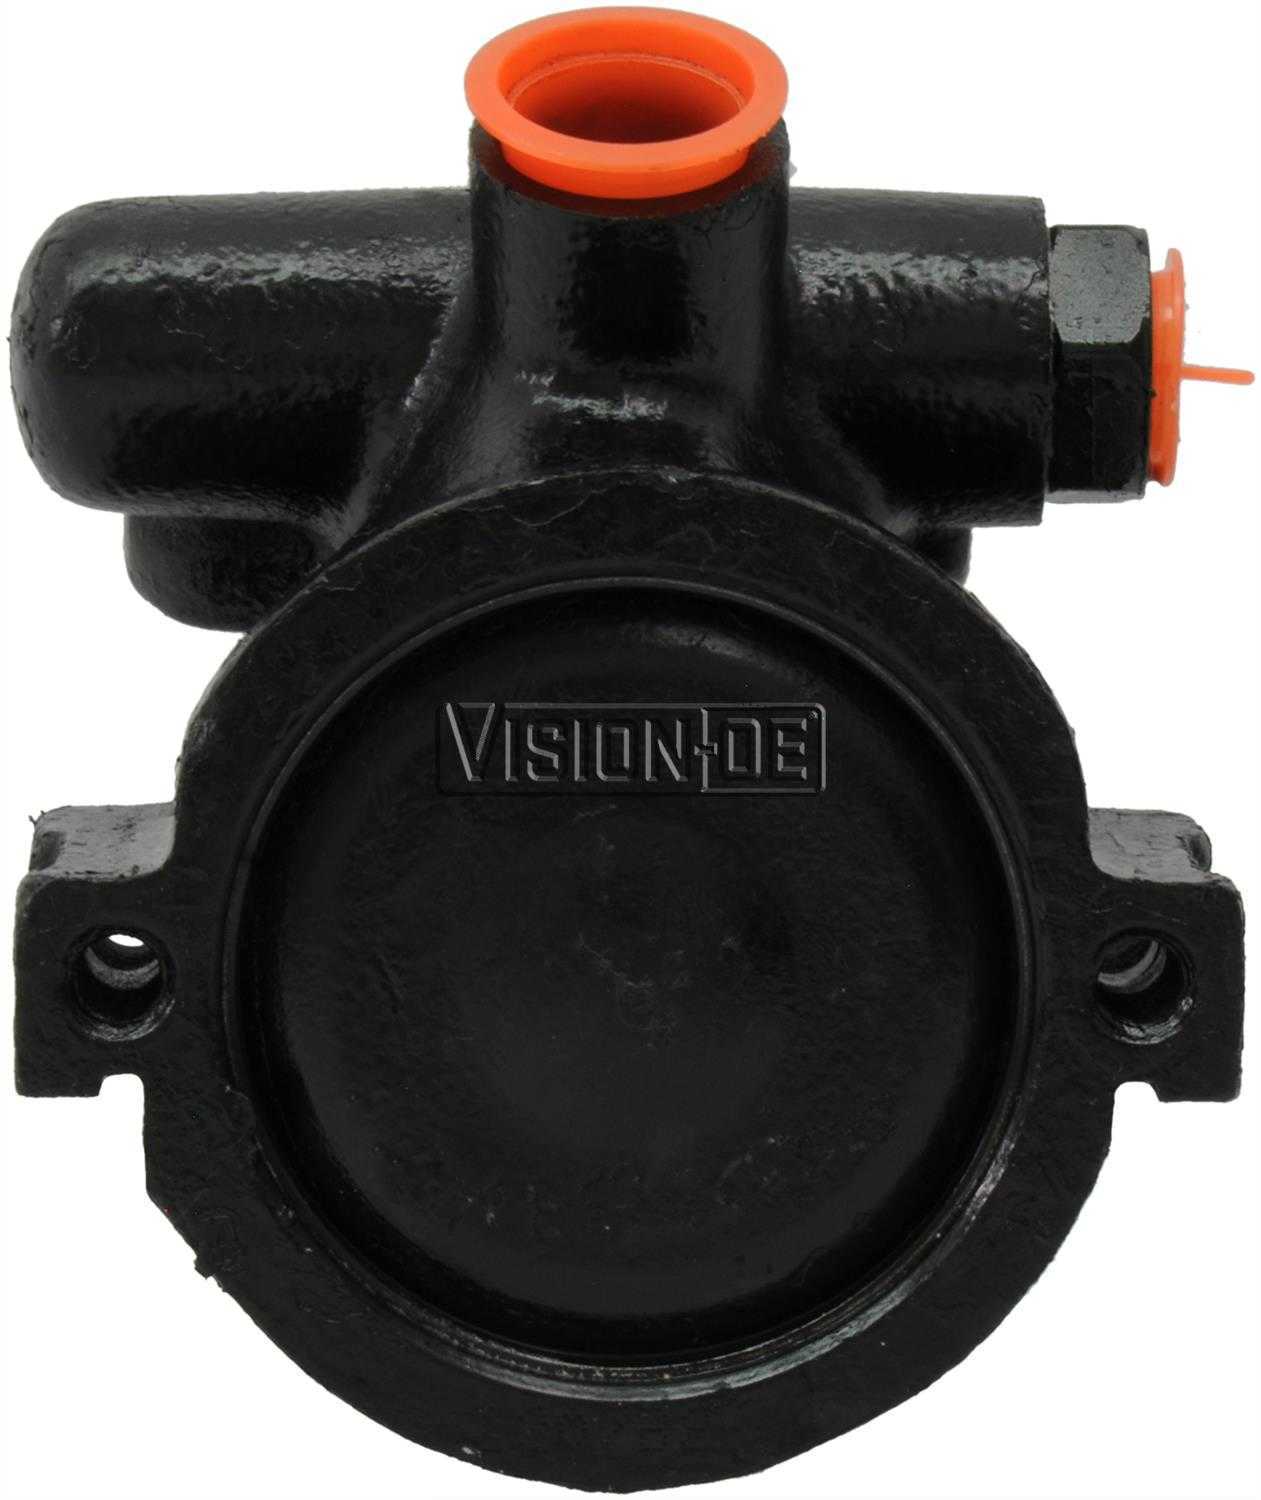 VISION-OE - Reman Power Steering Pump - VOE 734-0105